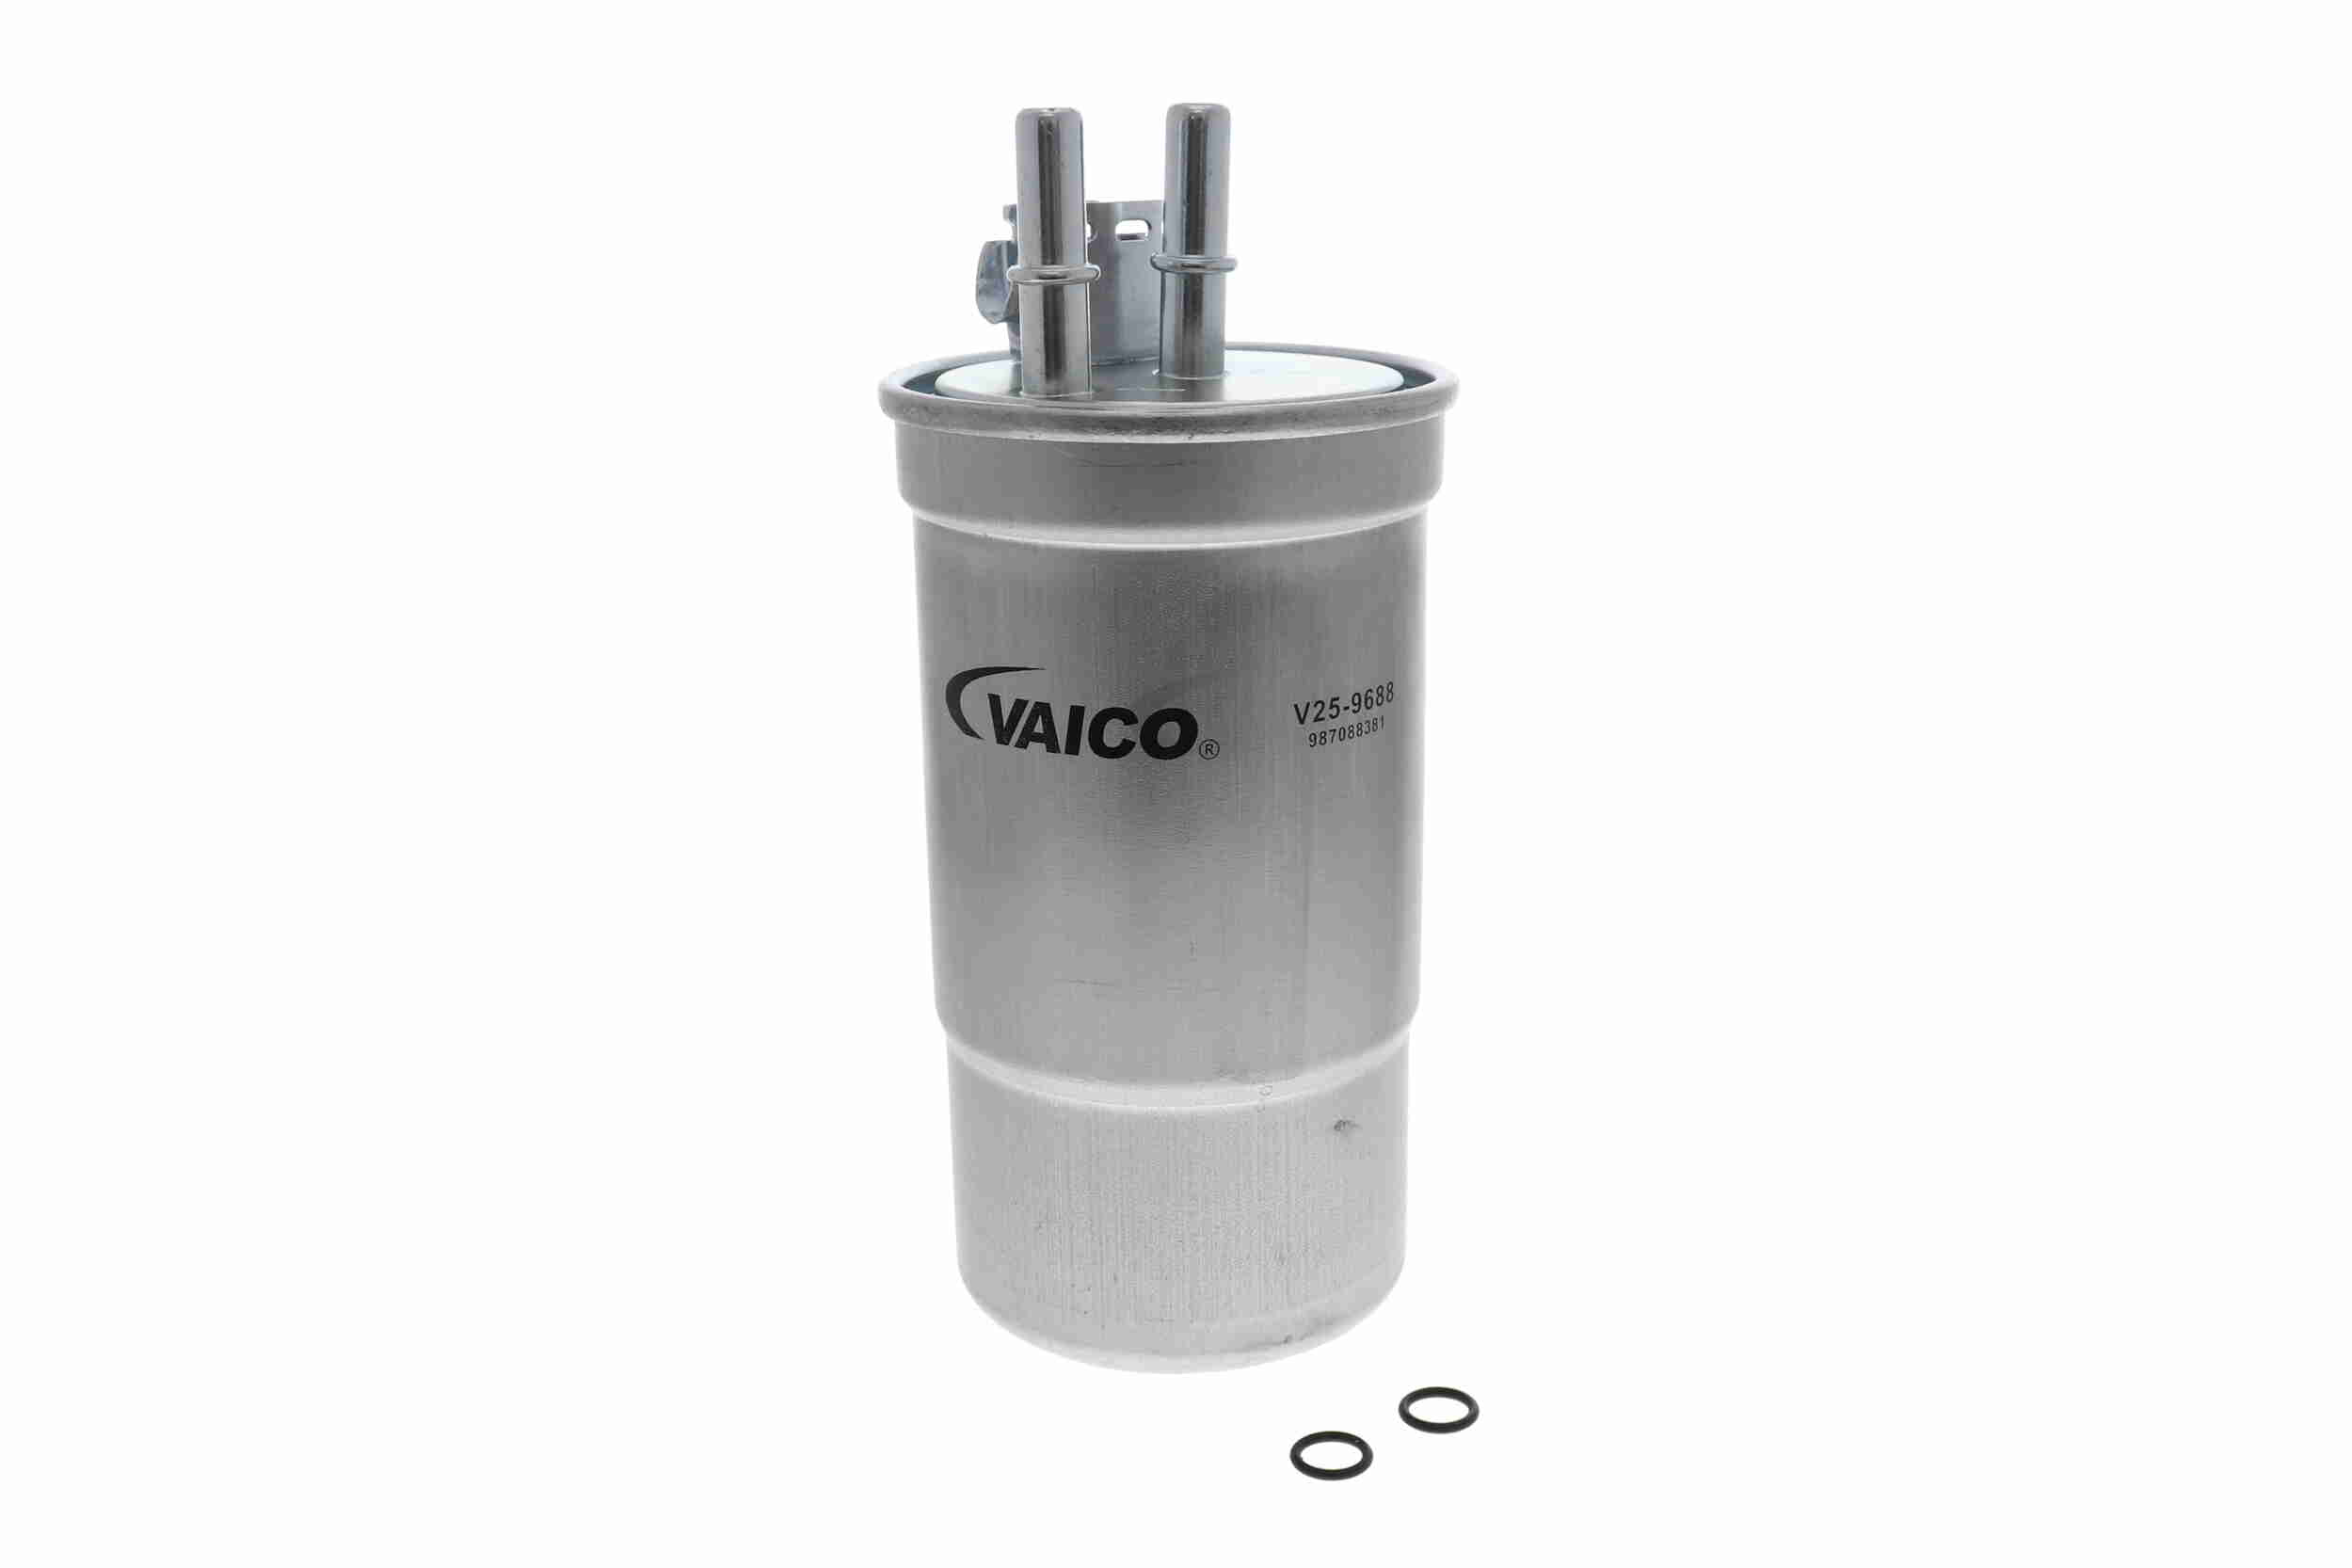 VAICO V25-9688 palivovy filtr